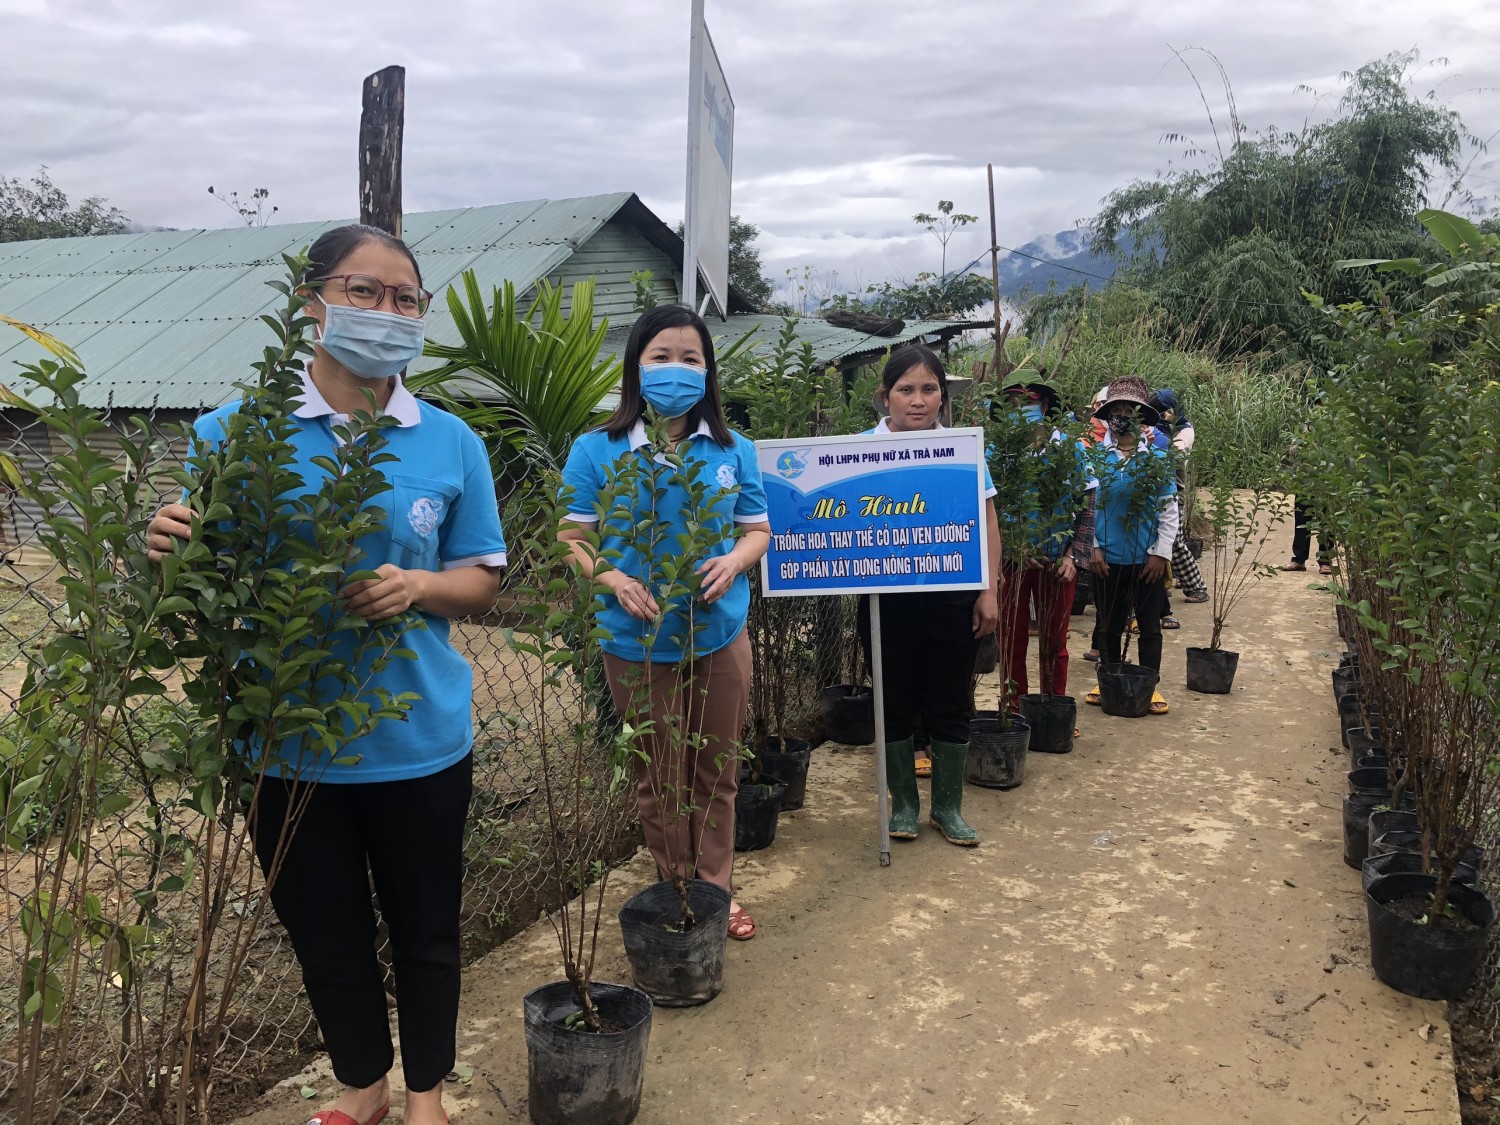 Hội LHPN huyện Nam Trà My vừa tổ chức ra quân thực hiện mô hình “Trồng hoa thay thế cỏ dại ven đường” tại thôn 1, xã Trà Nam